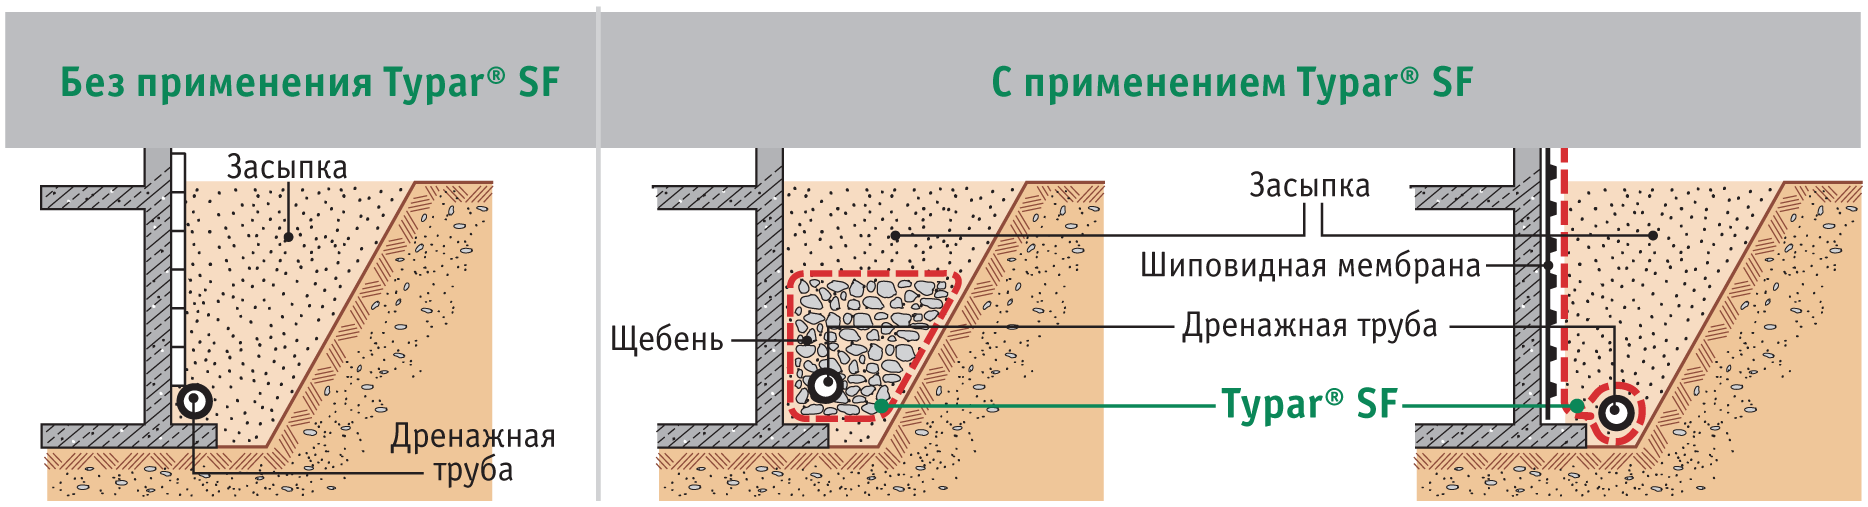 Как сделать дренаж фундамента дома своими руками на глинистых почвах